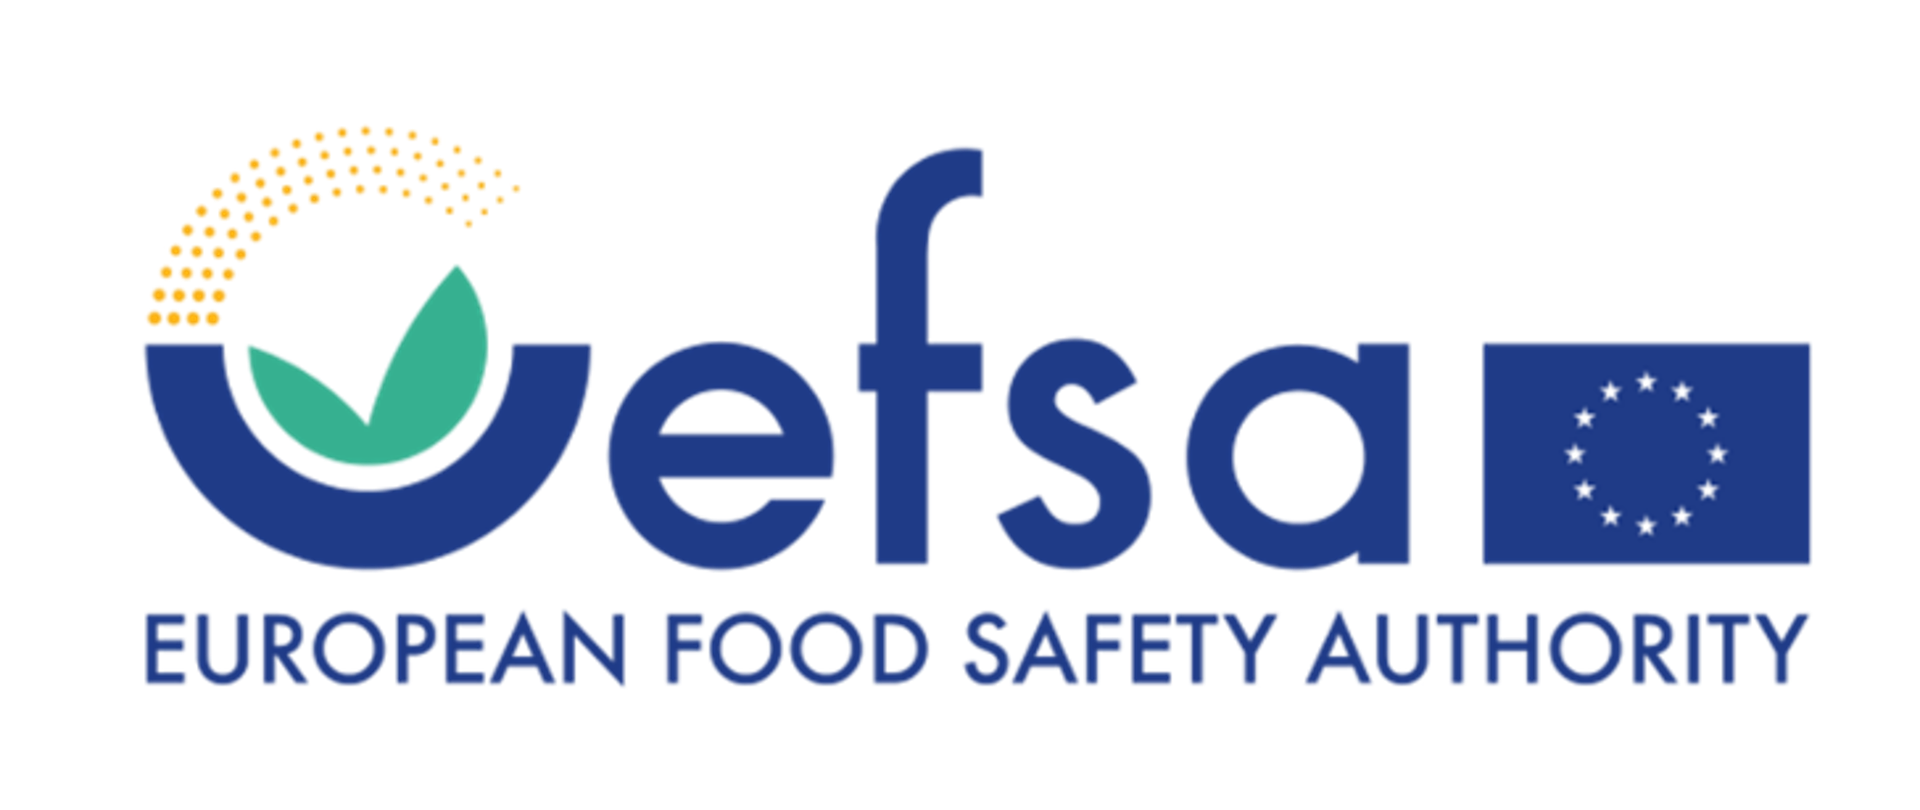 Napis European Food Safeety Authority i logo EFSA